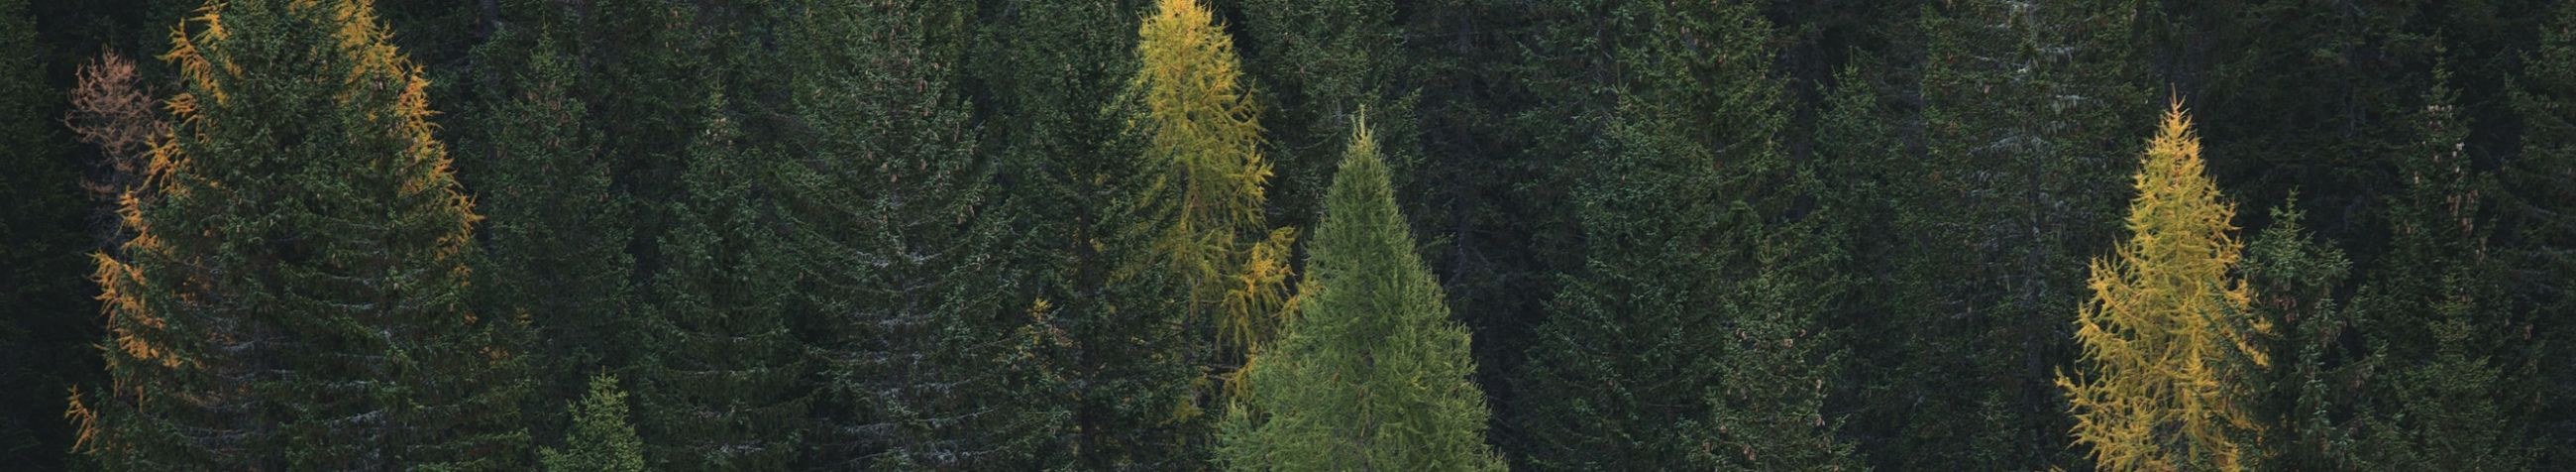 Eesti metsanduse uus põlvkond! Kehtestame uusi jätkusuutliku metsamajandamise standardeid, olles teadlikule maaomanikule parim partner Eesti metsas.